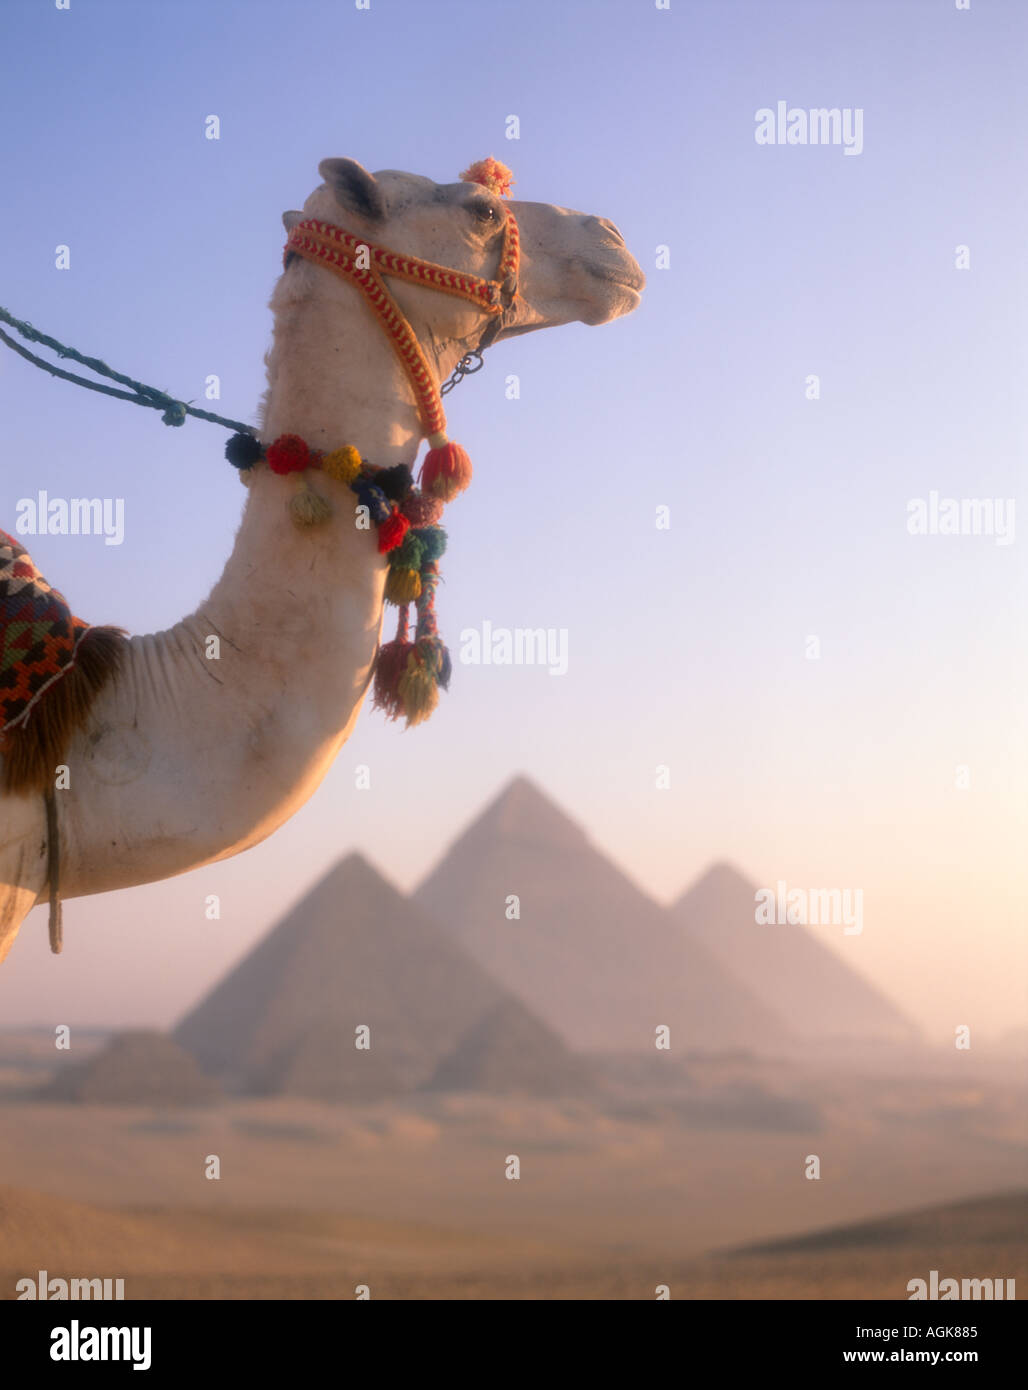 Les chameaux et pyramides Gizeh Le Caire Egypte Banque D'Images